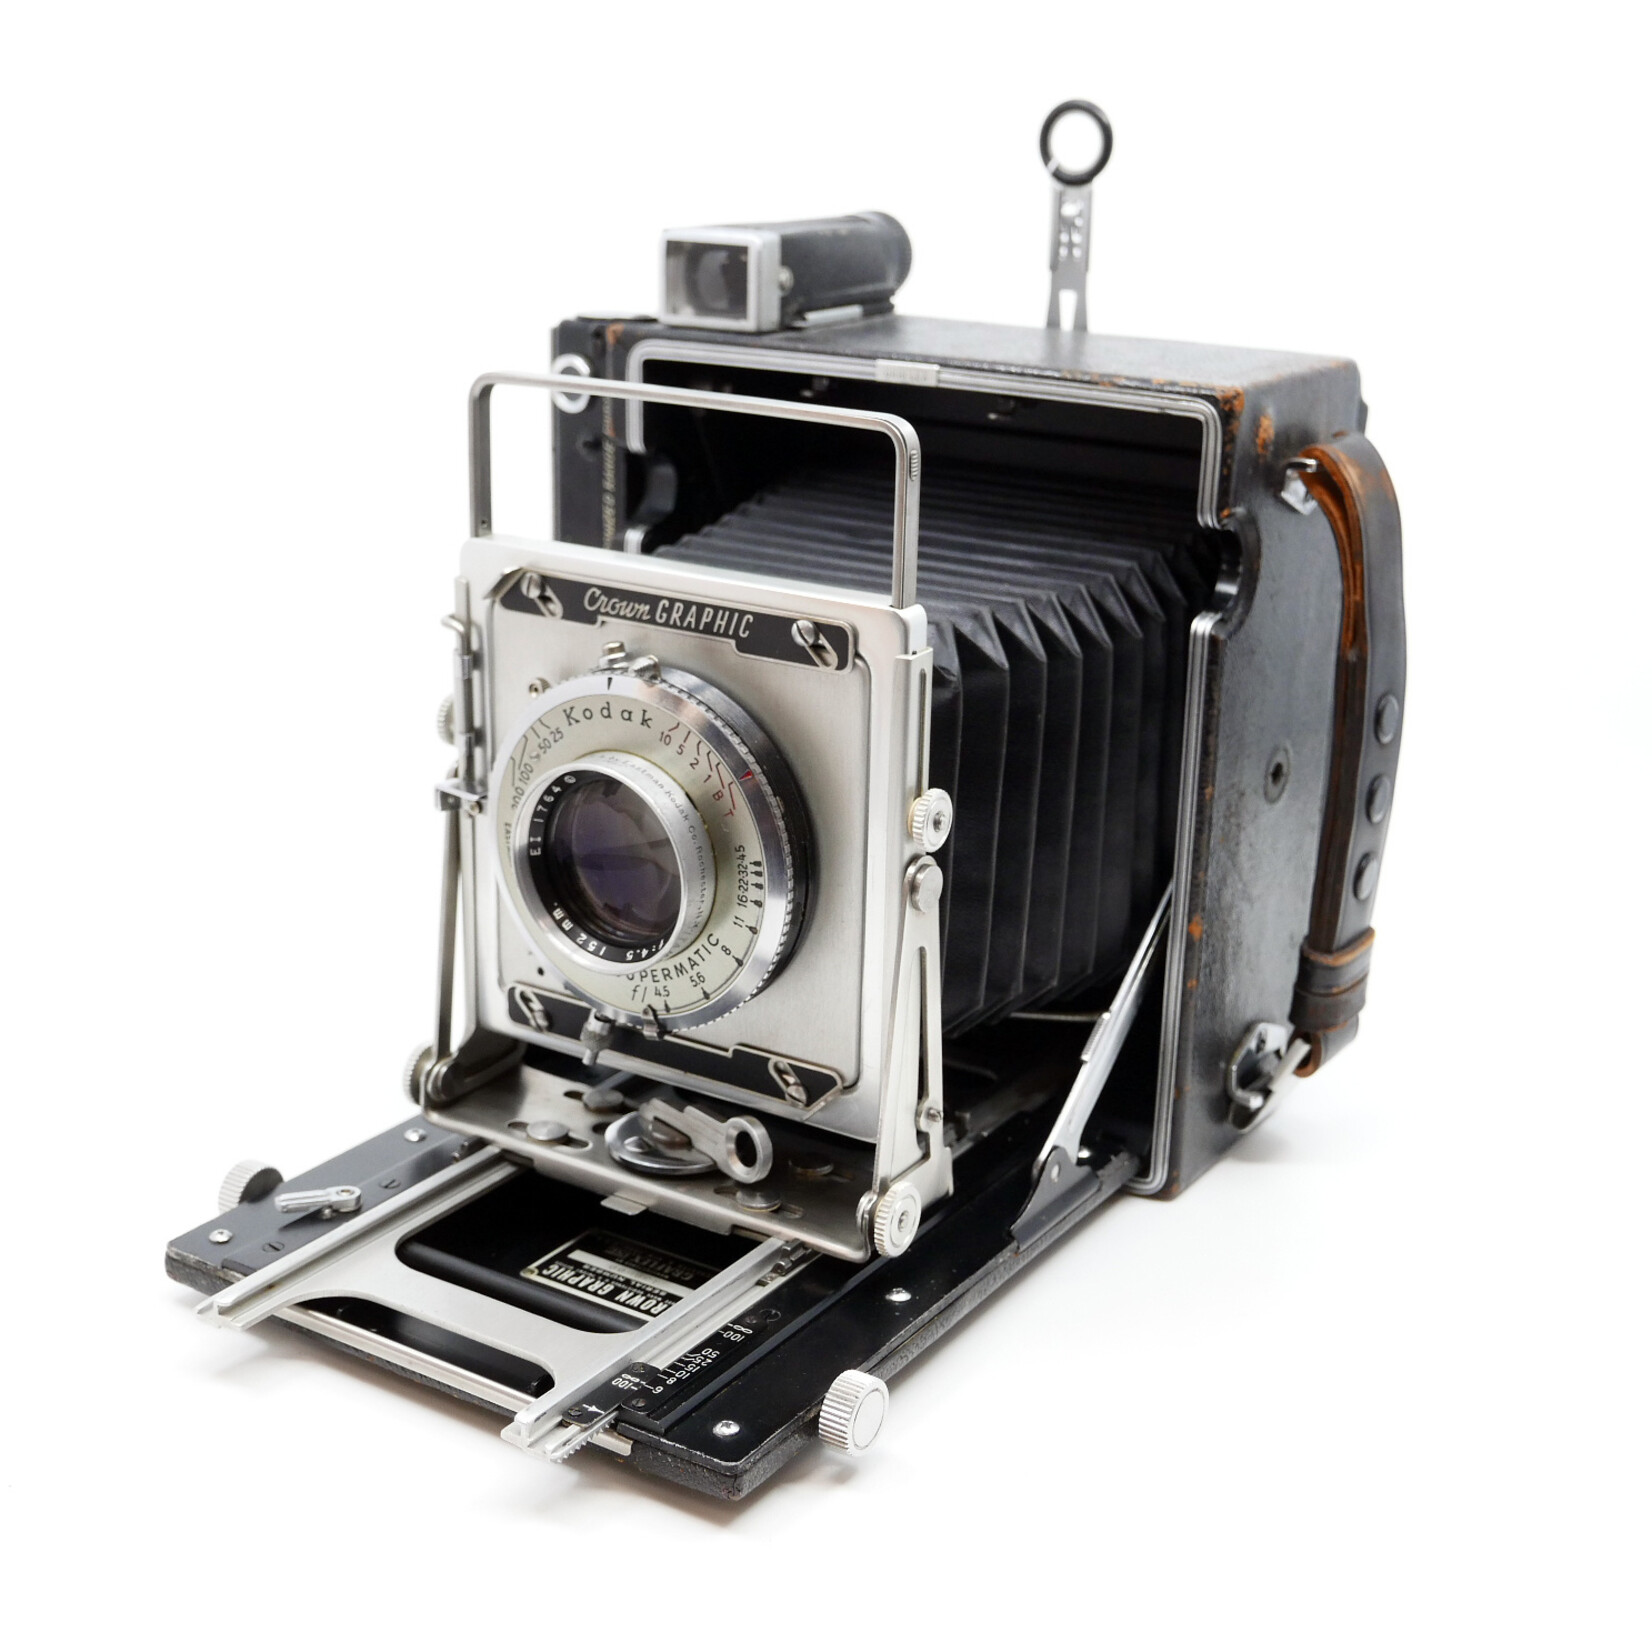 Graflex Graflex Crown Graphic 4x5 Film Camera w/Kodak Ektar 152mm f/4.5 (Used)